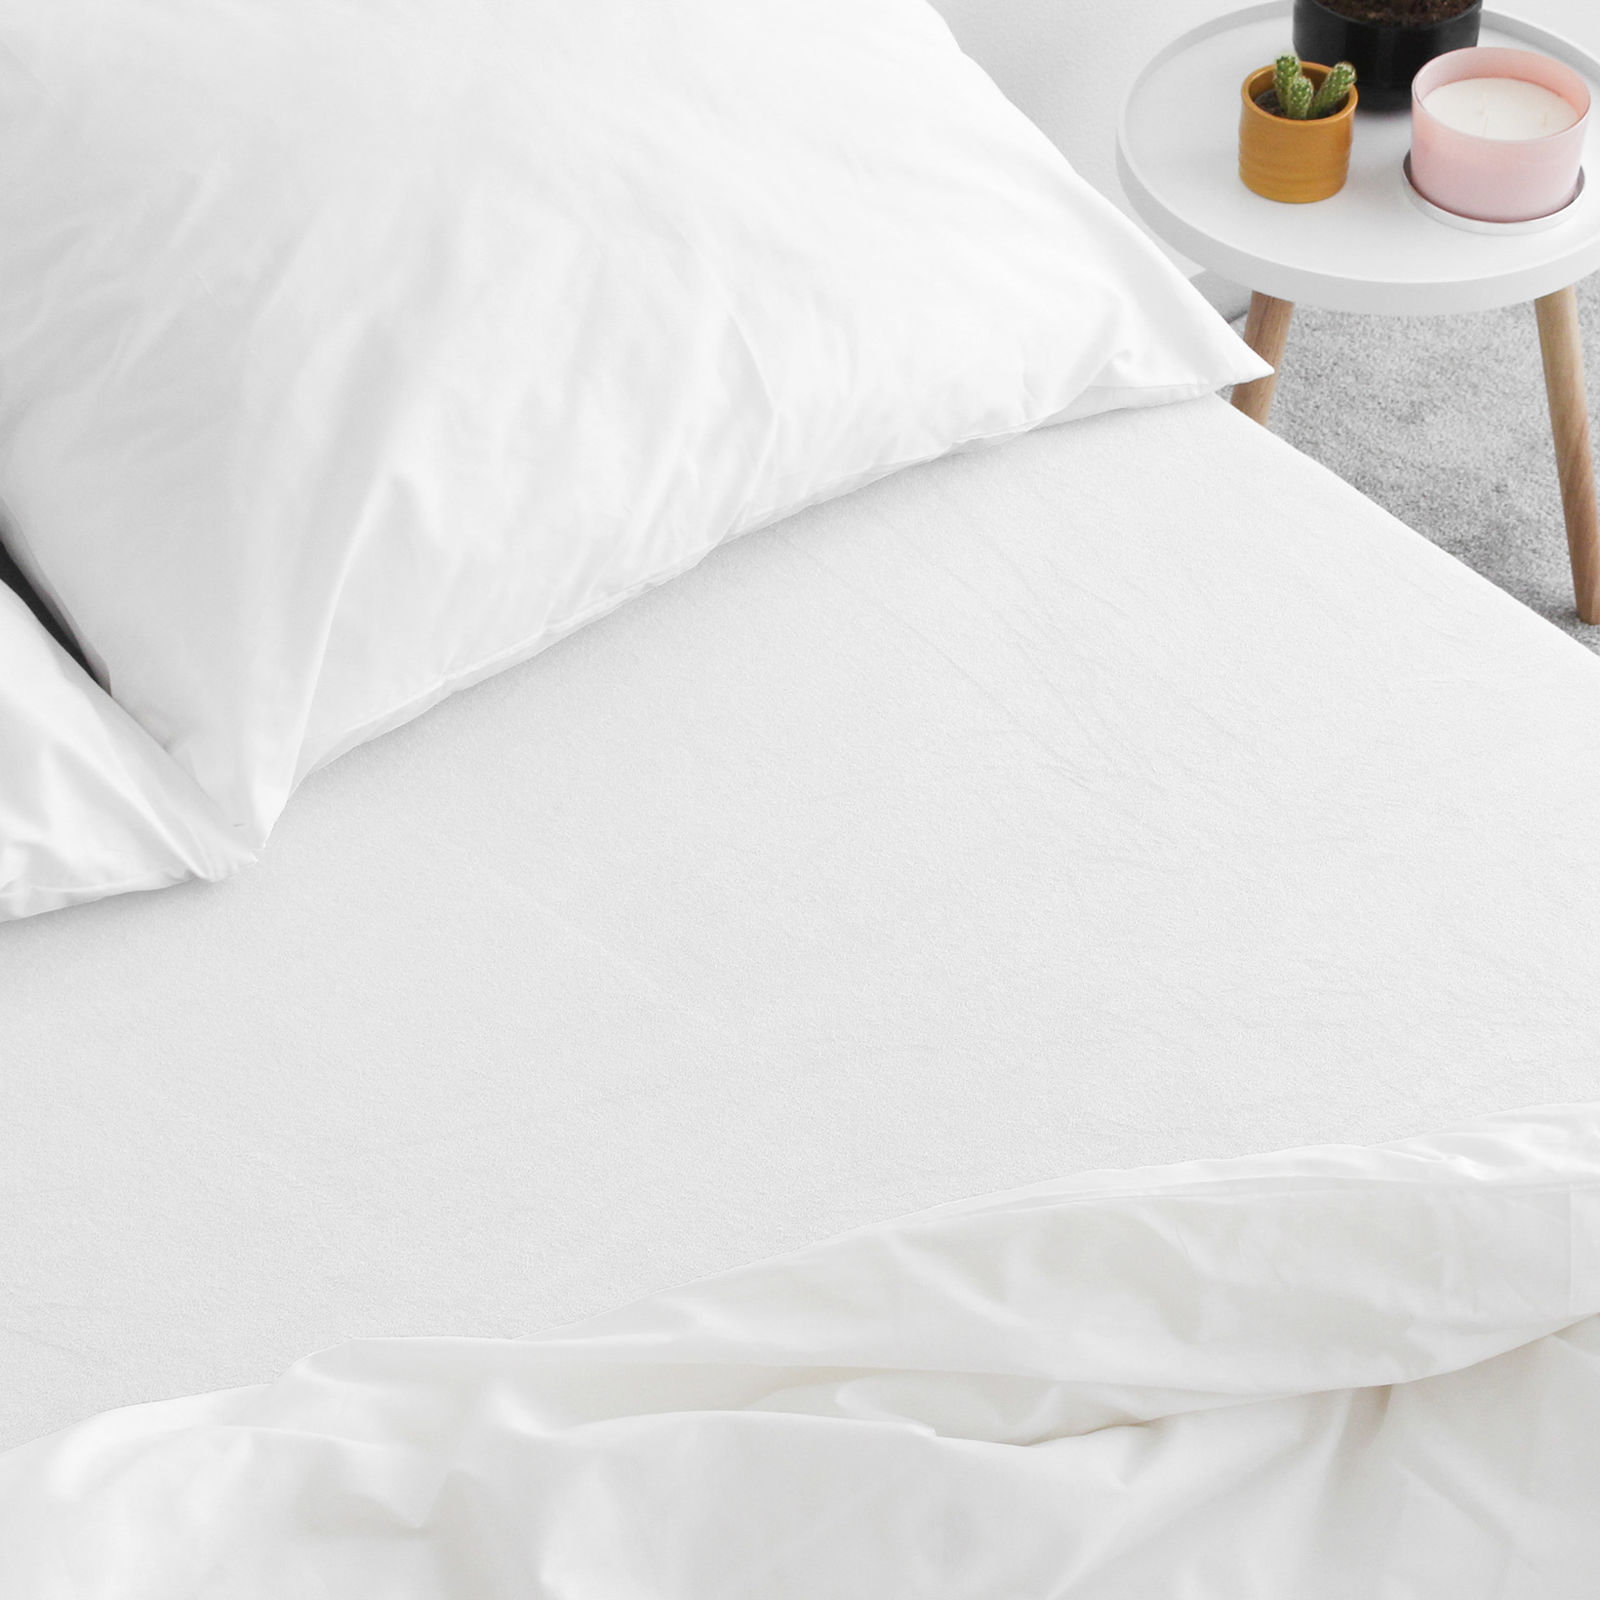 Exkluzív frottír lepedő magas matracokhoz - fehér